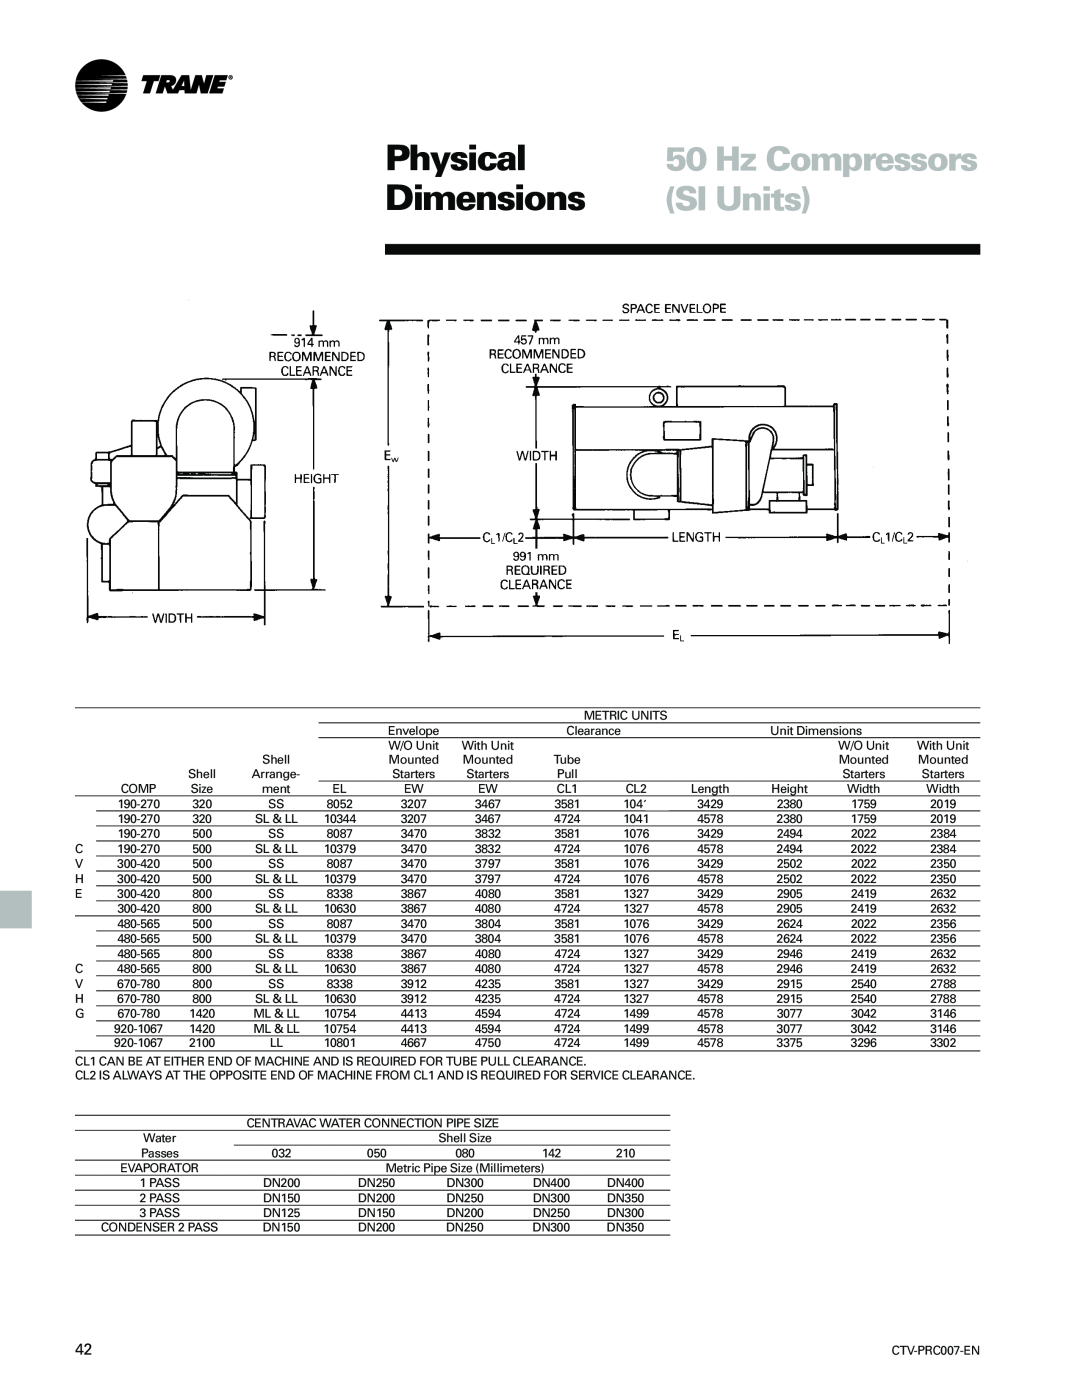 Trane ctv-prc007-en manual SI Units, Physical, Dimensions, Hz Compressors 